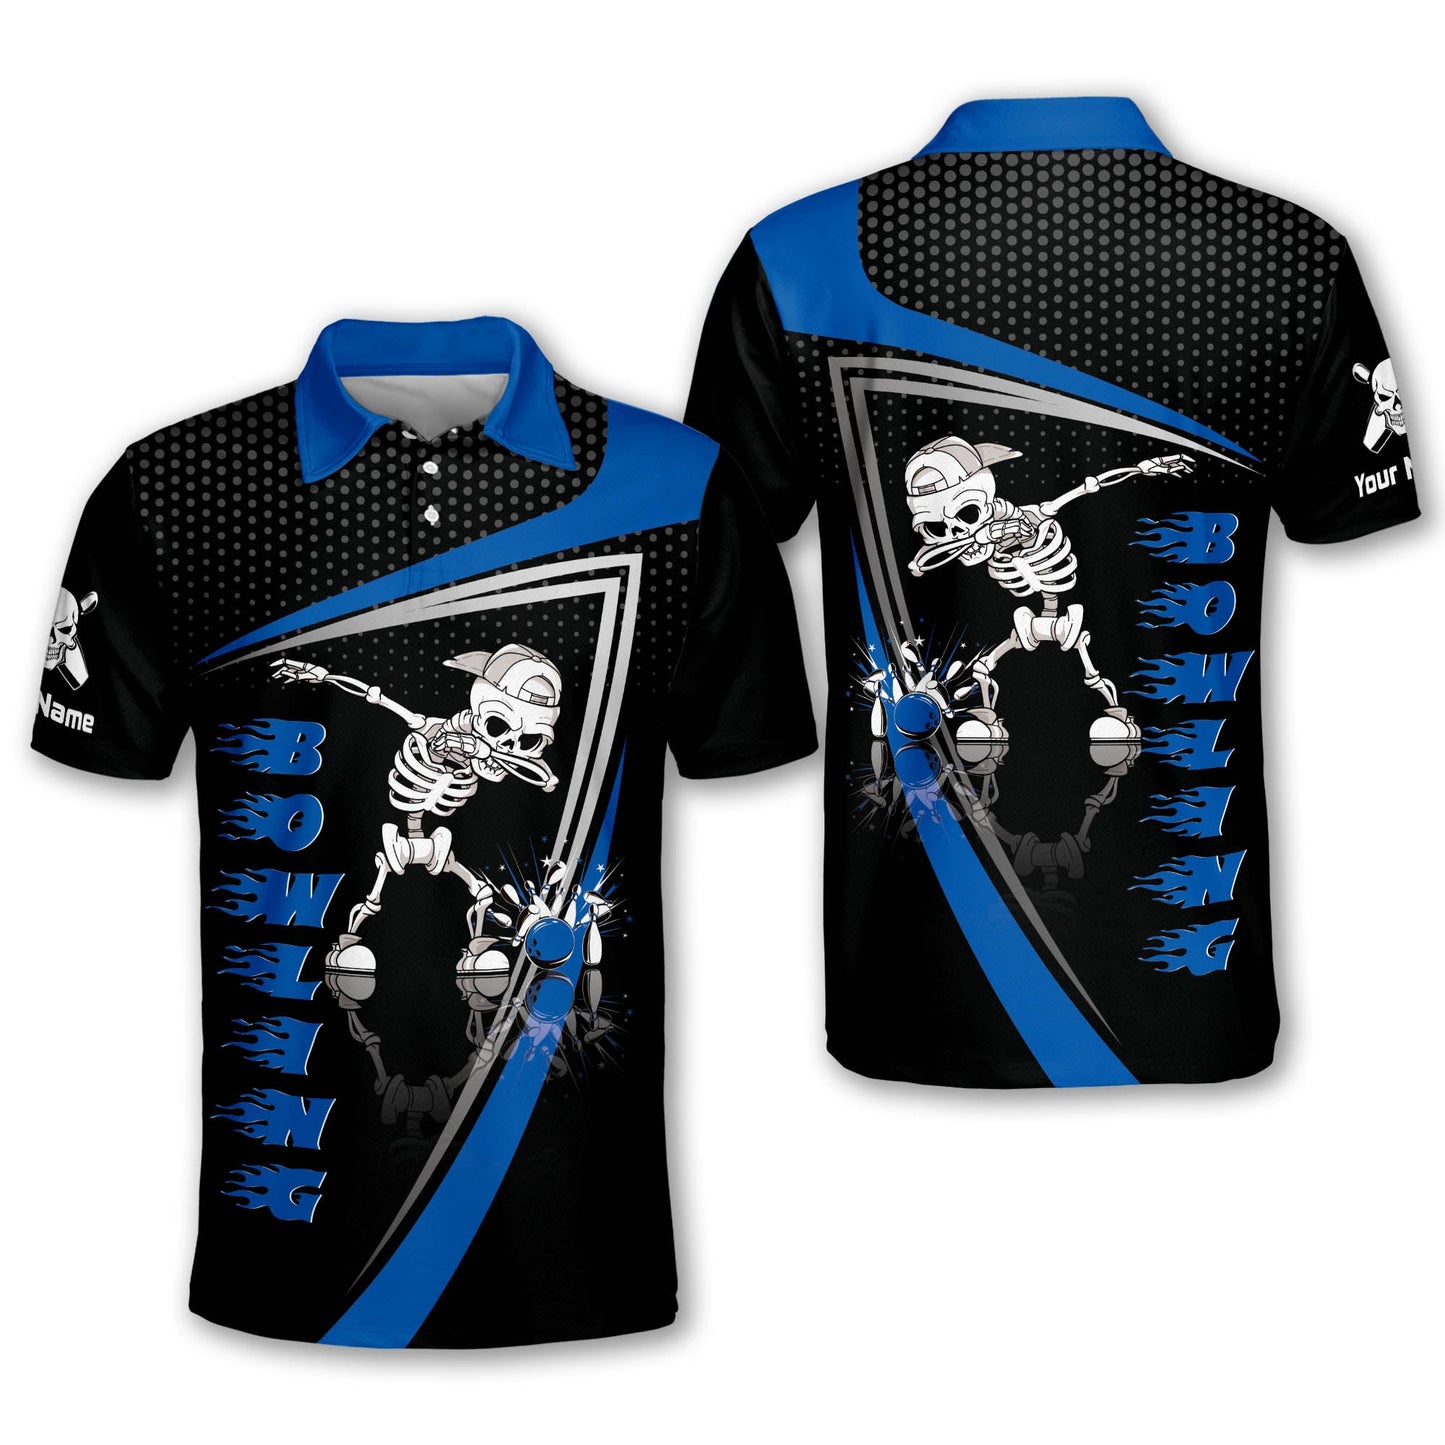 Custom Bowling Shirts For Men - Men's Skull Bowling Shirts Retro - Short Sleeve Bowling Polo Shirts Designs Custom - Blue And Black Bowling Shirts BM0135